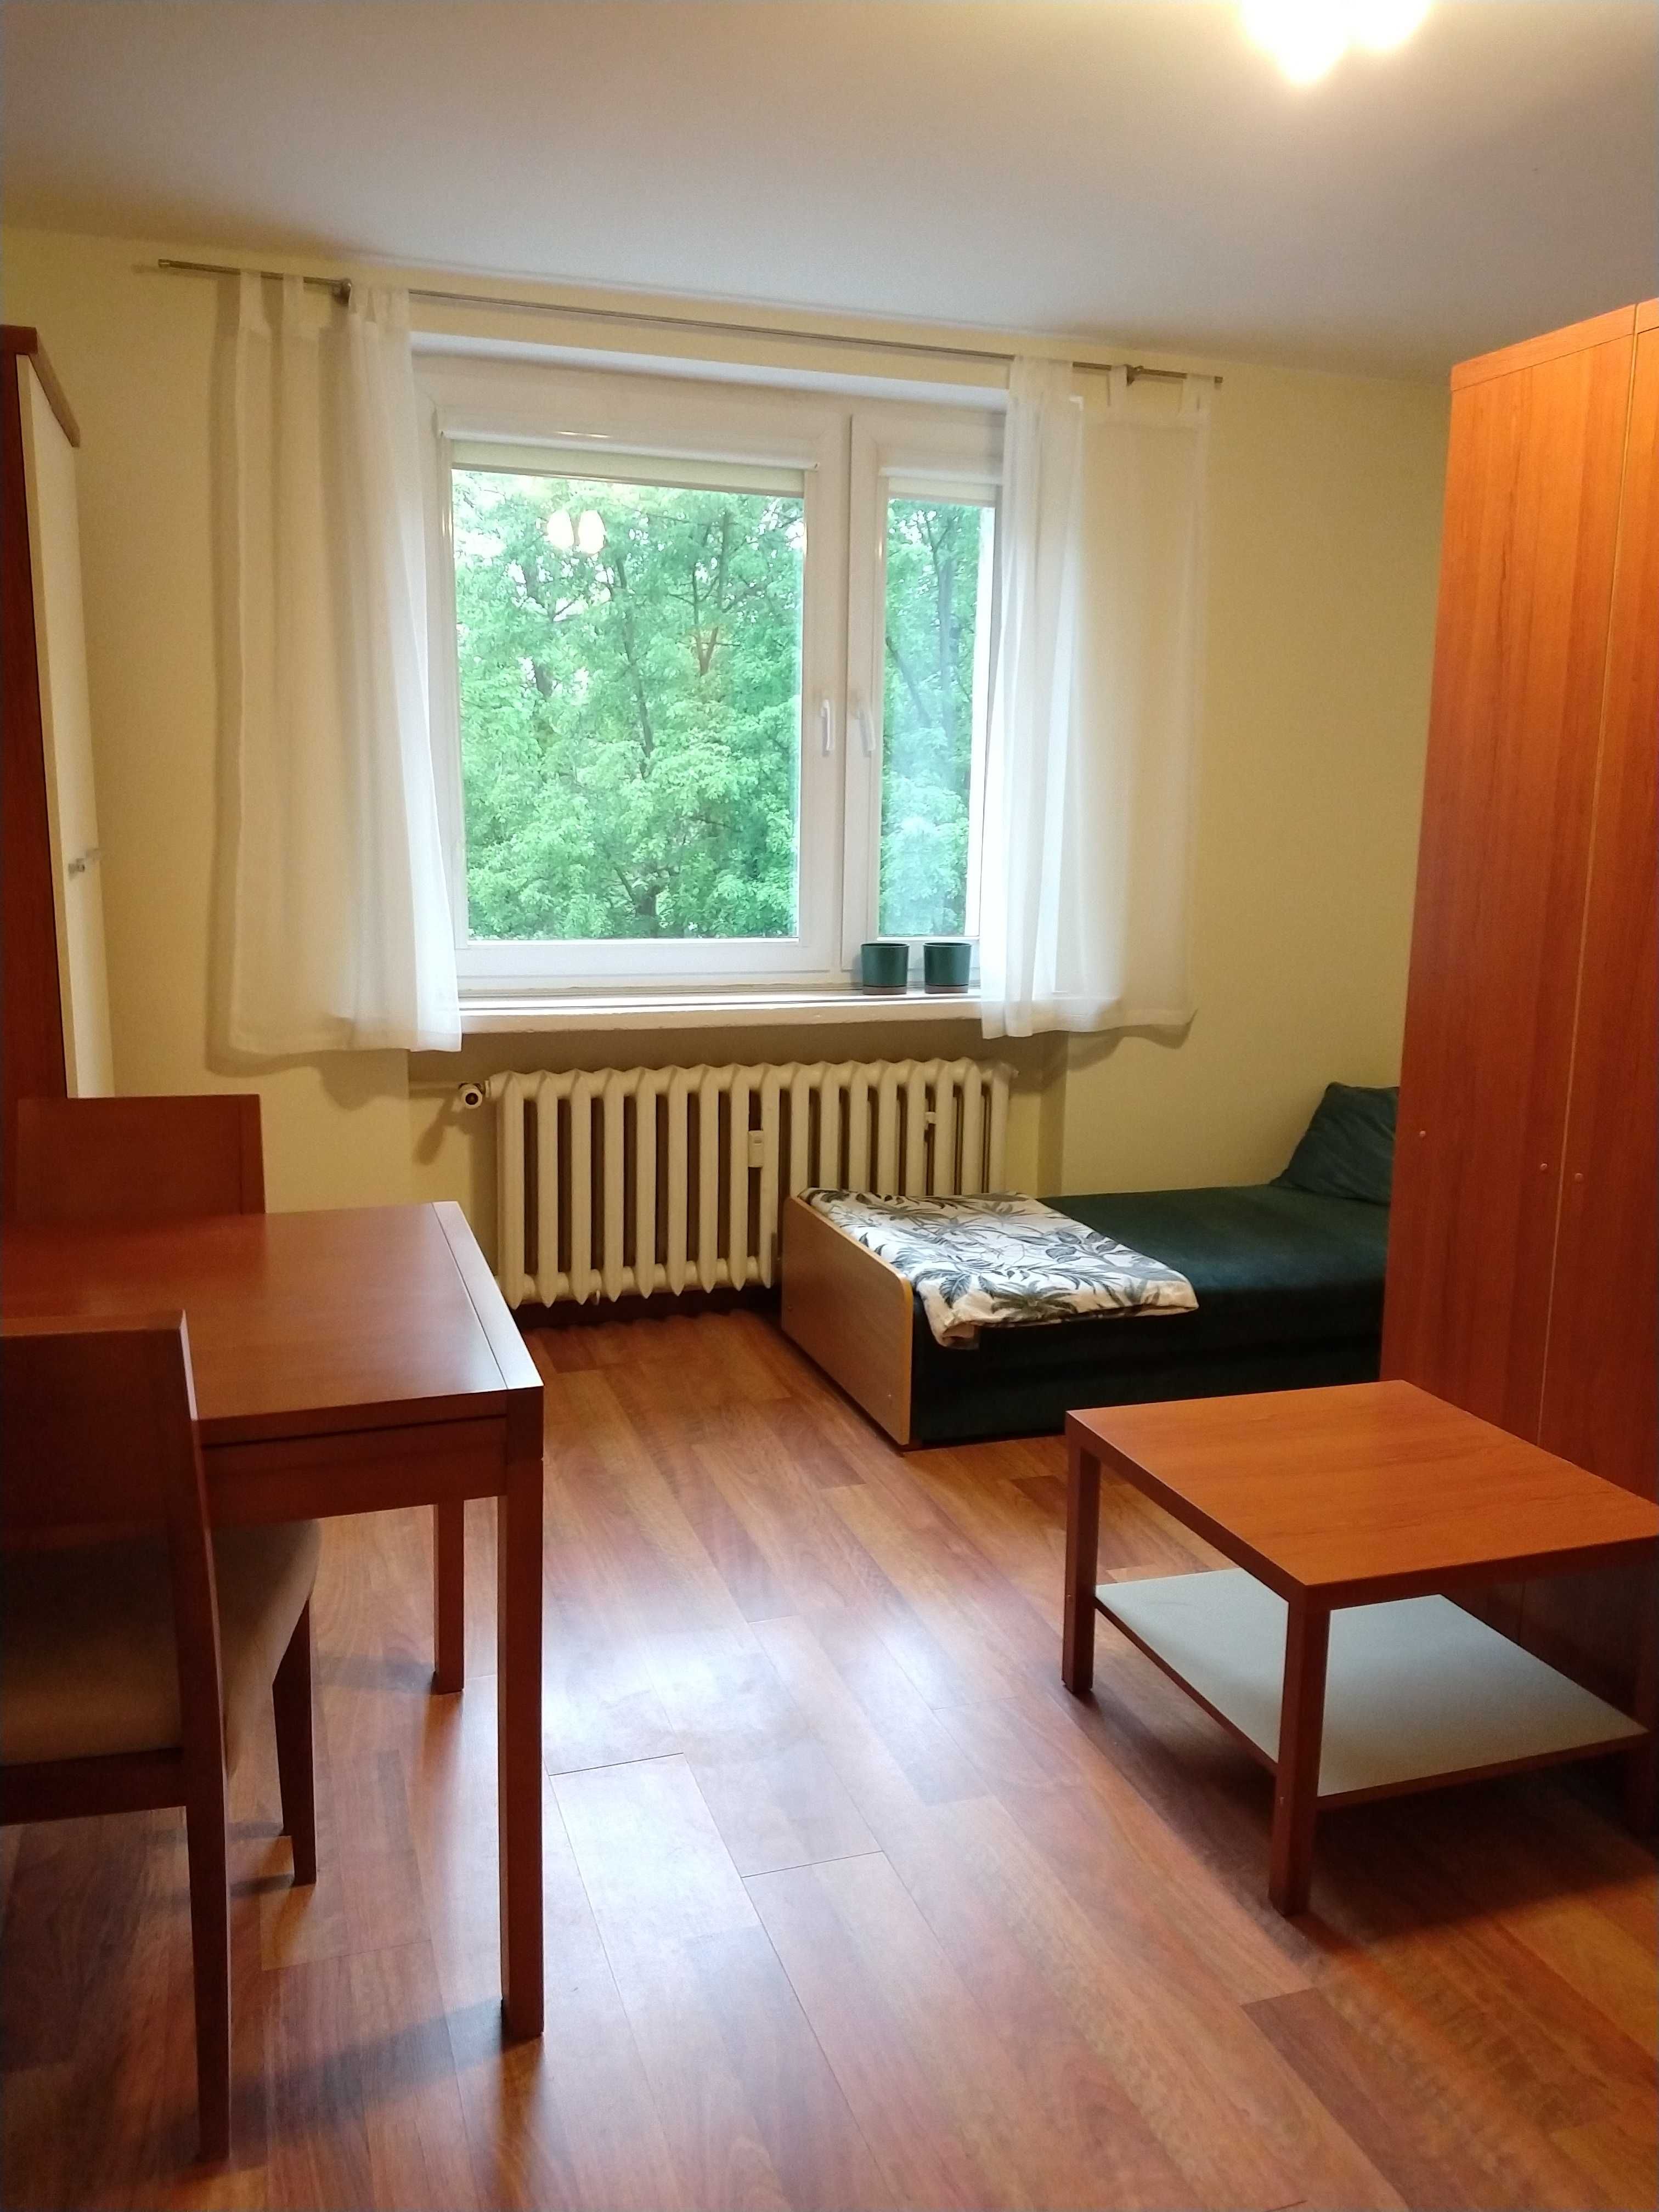 Pokój dwuosobowy w spokojnym mieszkaniu studenckim - Bogucice